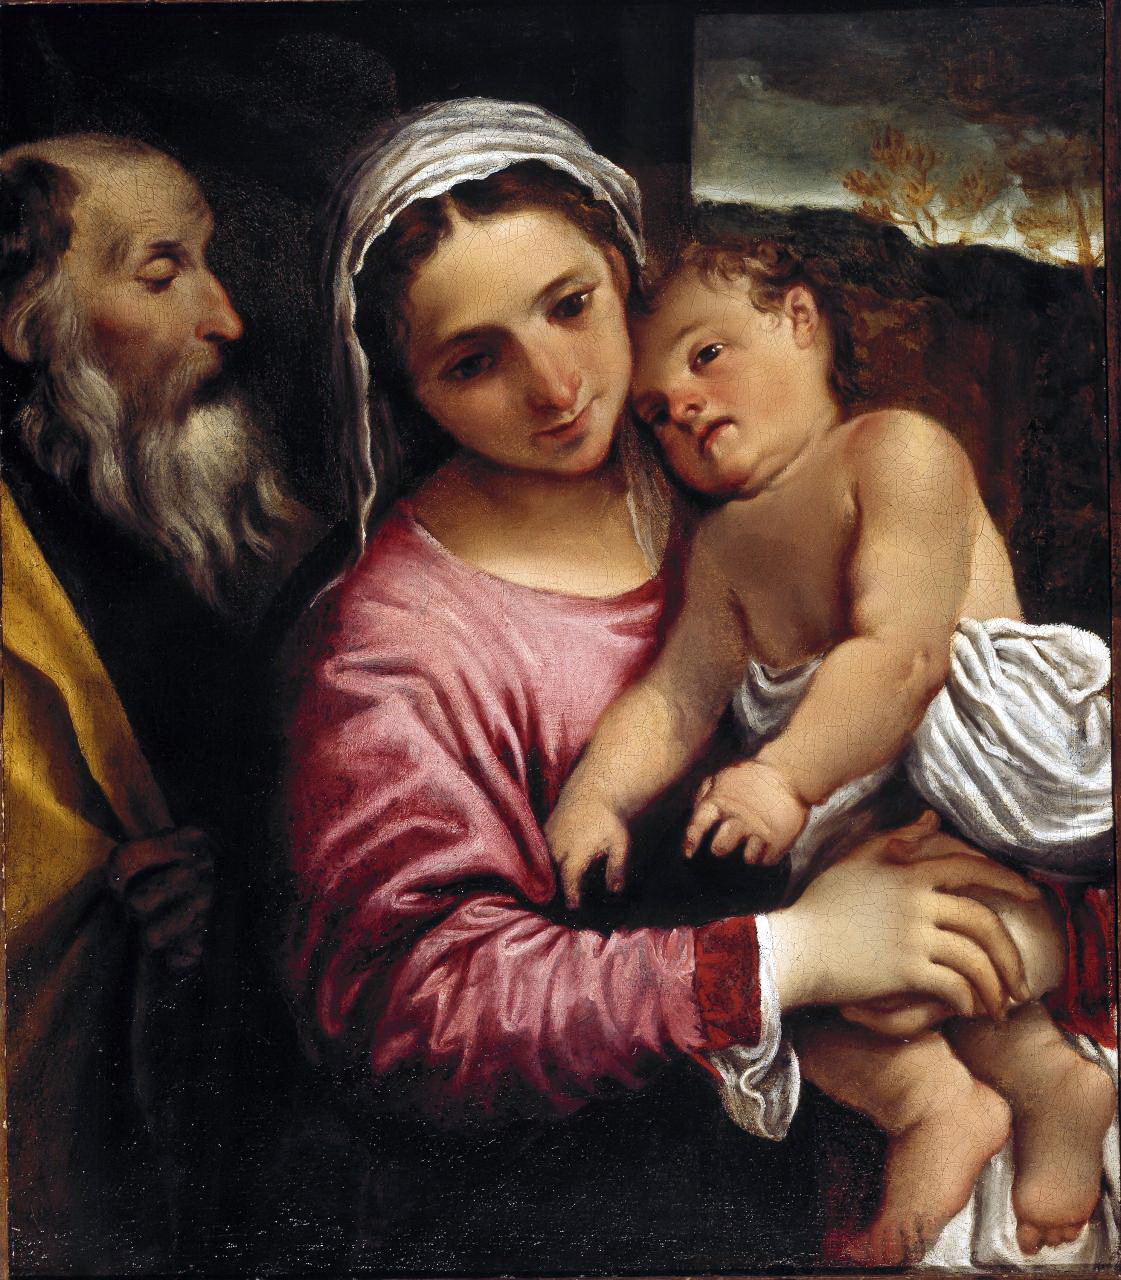 Annibale+Carracci-1560-1609 (59).jpg